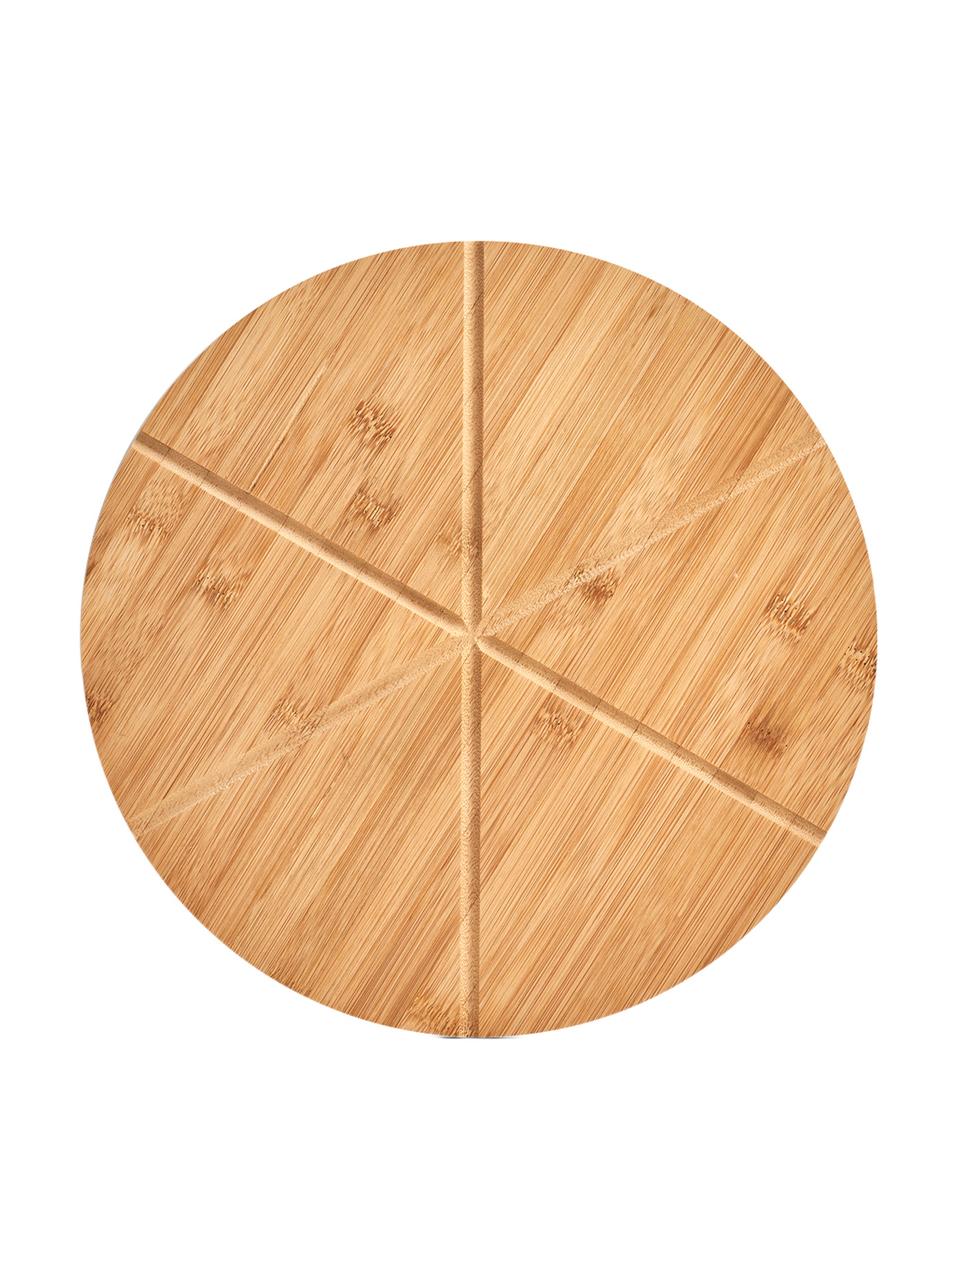 Komplet do pizzy z drewna bambusowego Italiana, 2 elem., Drewno bambusowe, metal, Drewno bambusowe, metal, Ø 32 cm